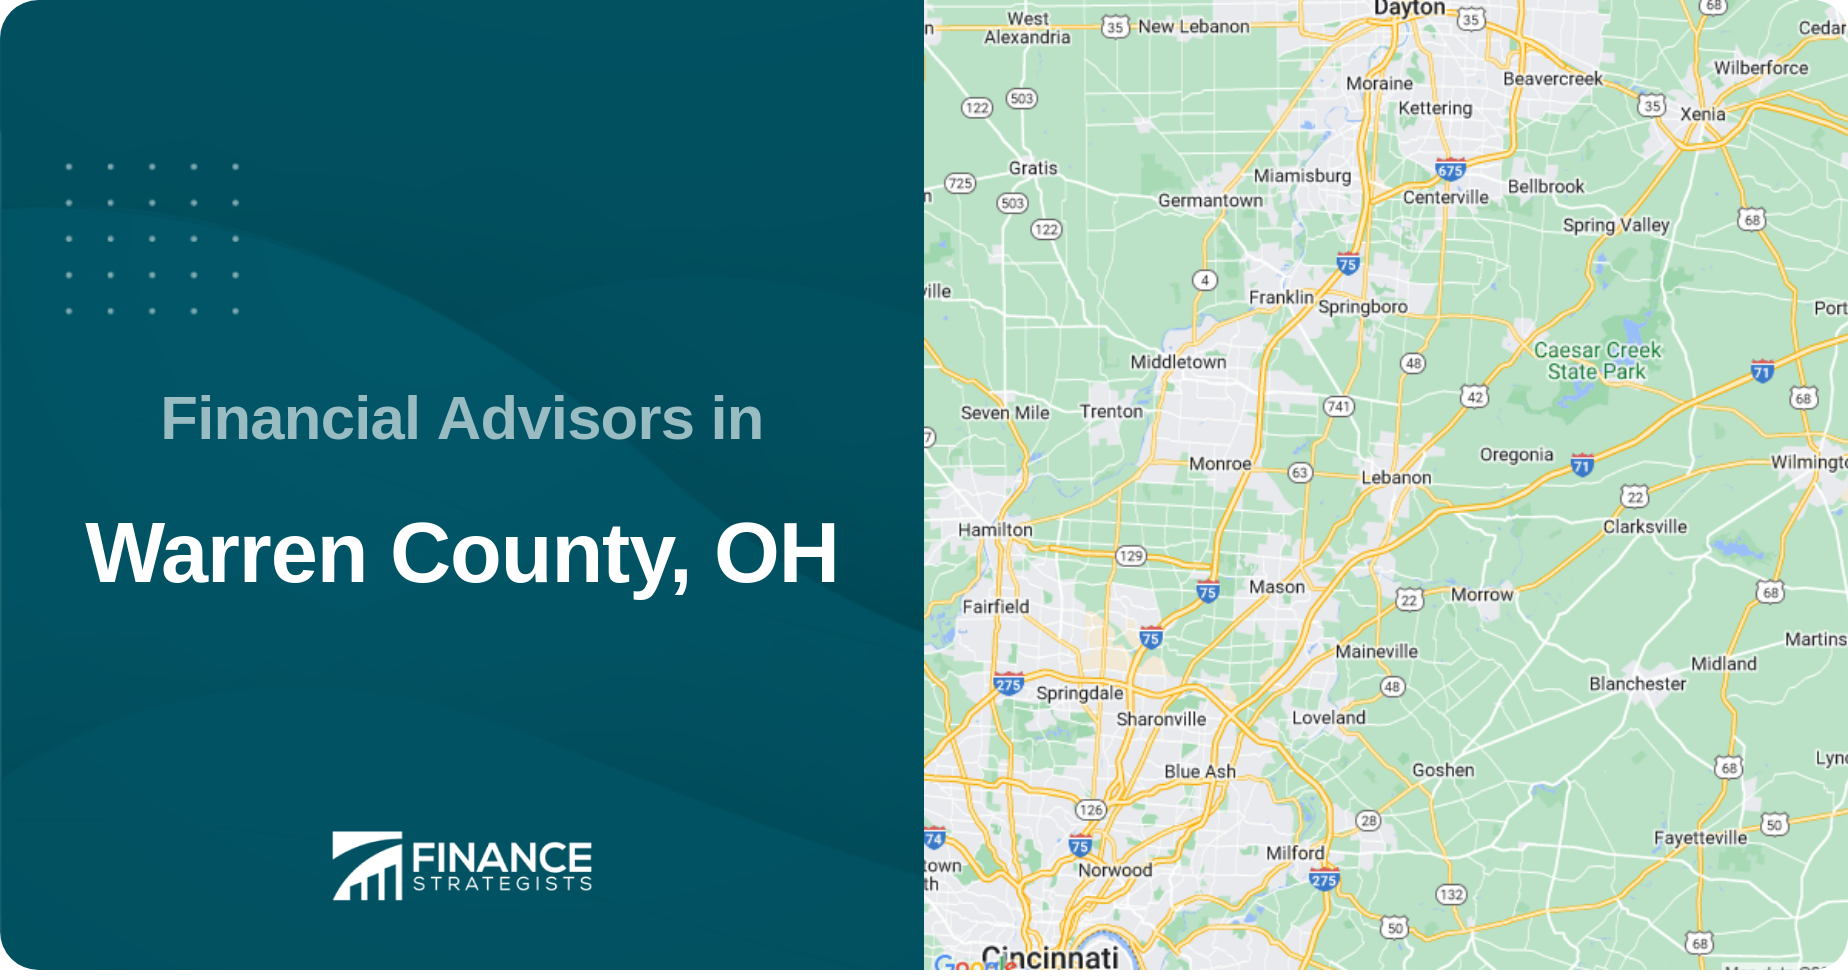 Financial Advisors in Warren County, OH